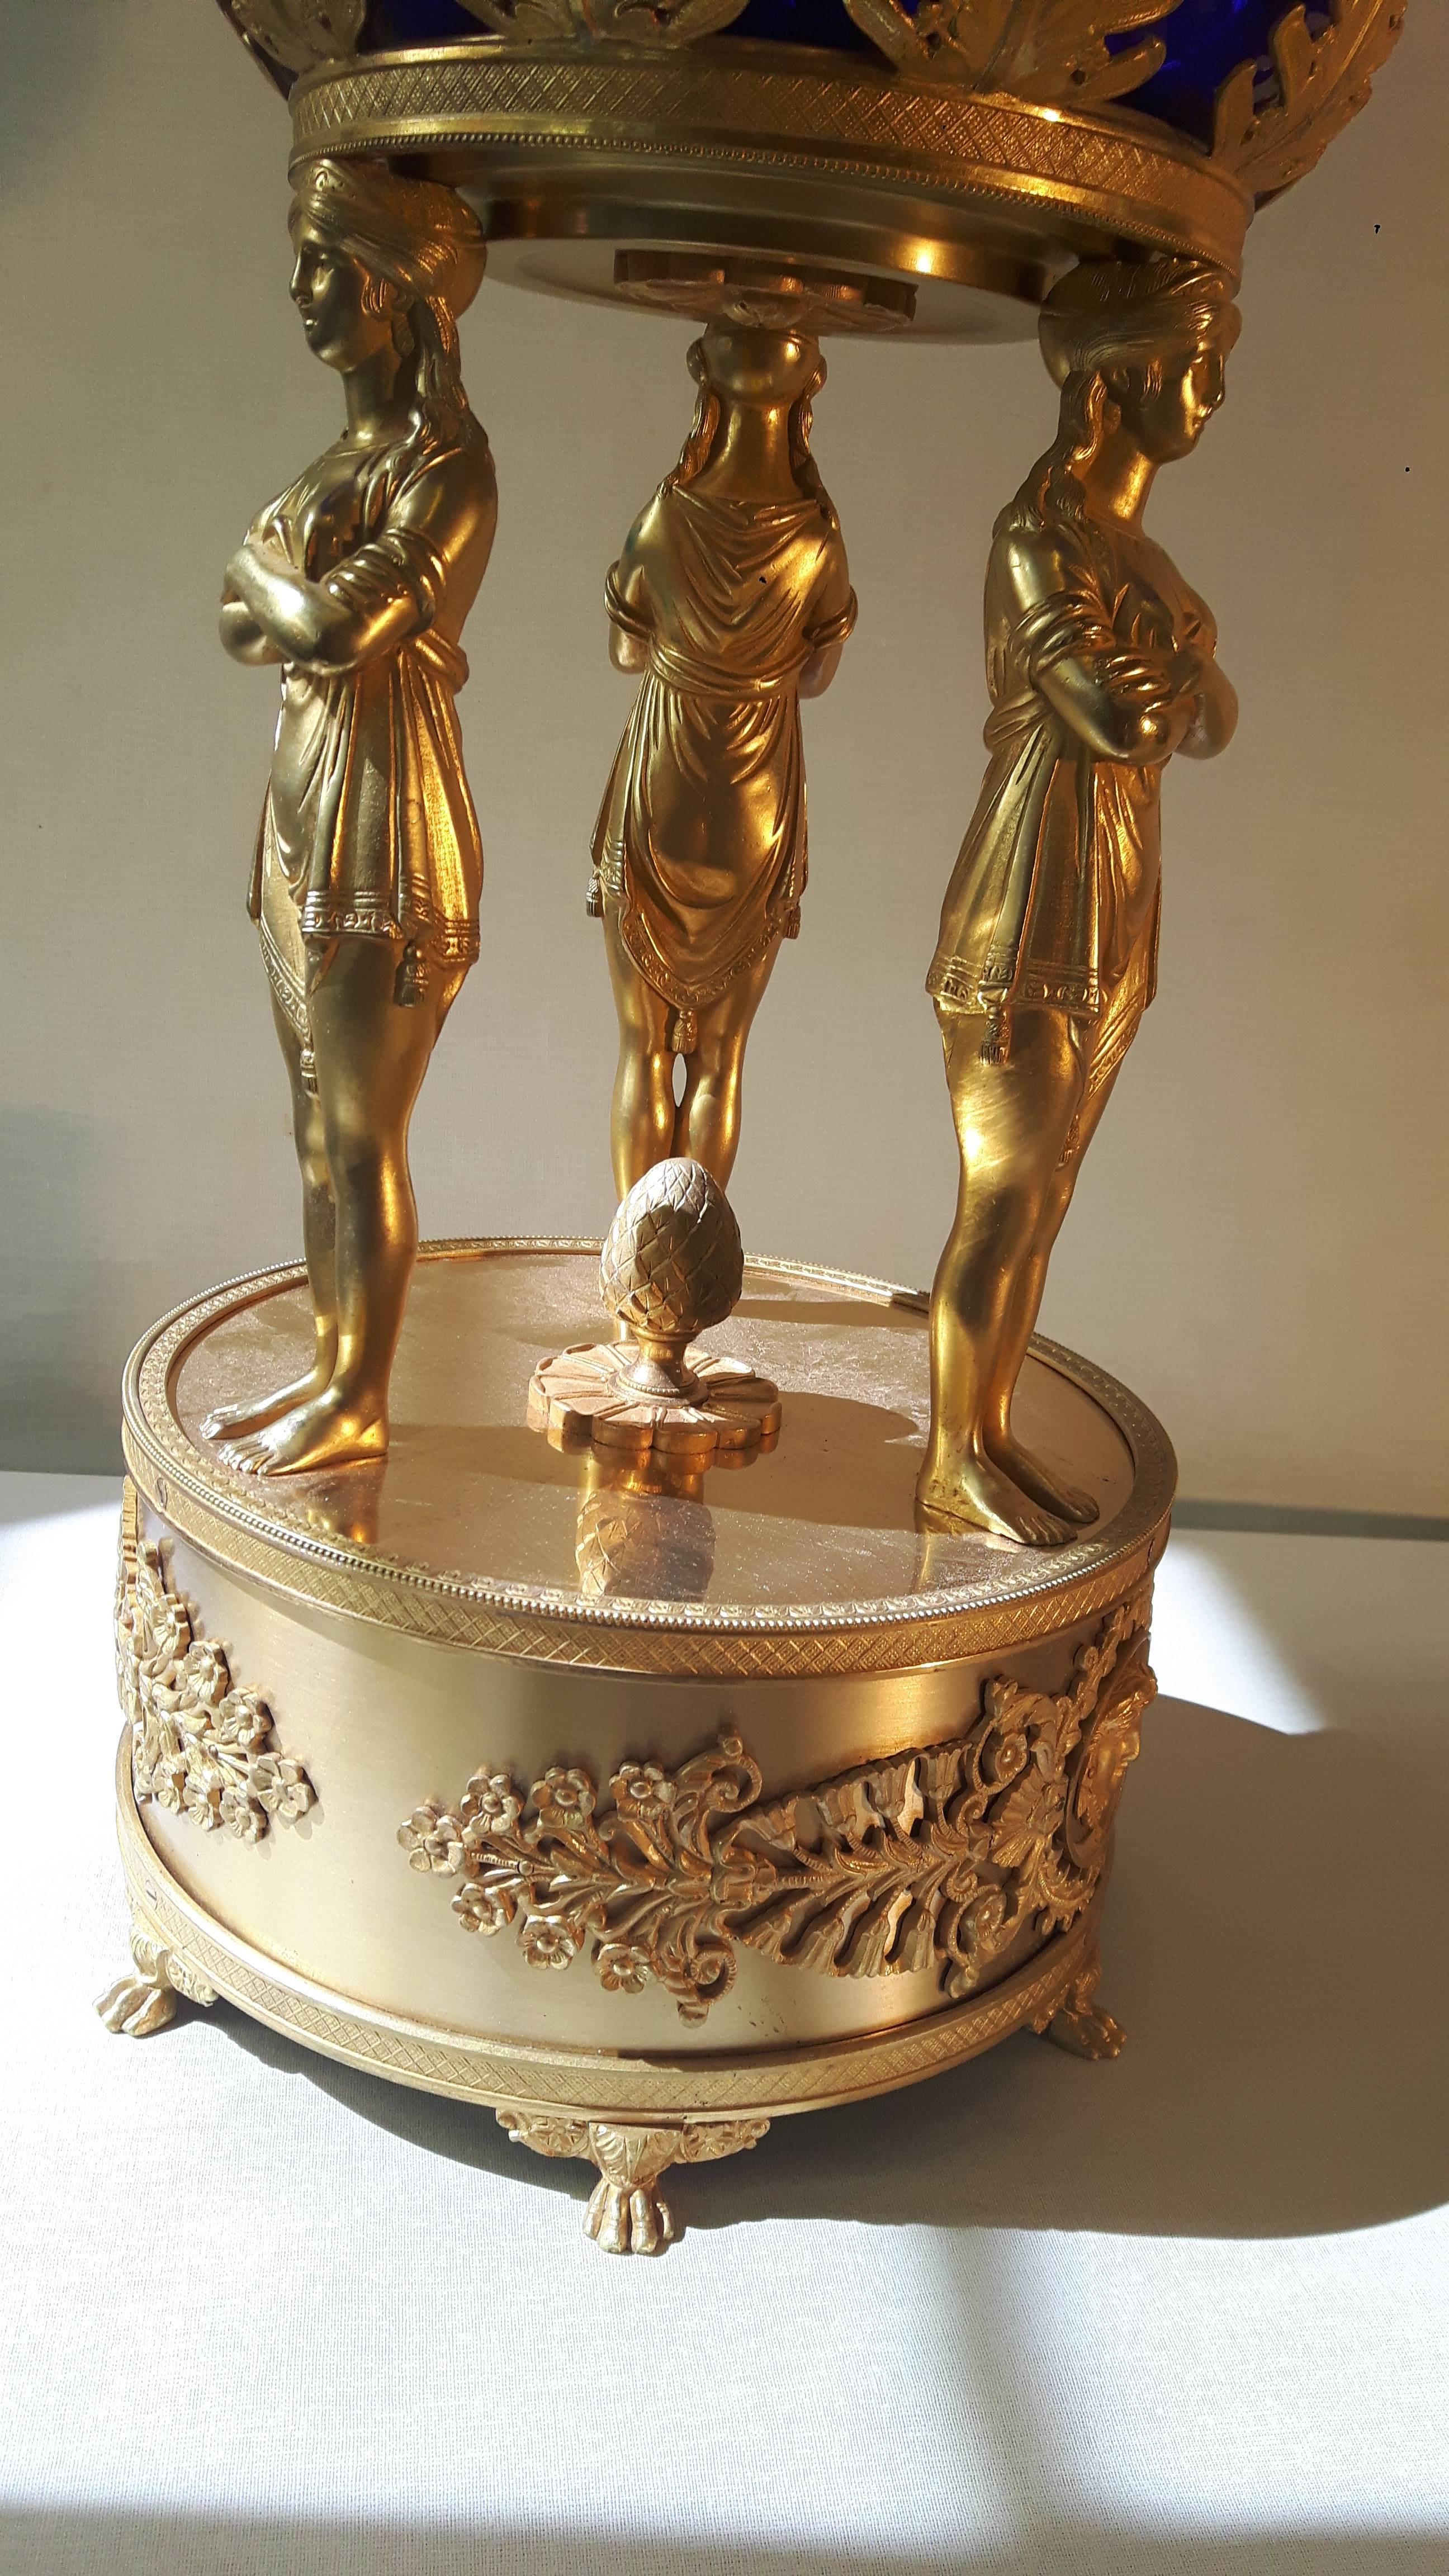 Spectaculaire tazza napoléonien, avec une coupe en verre bleu taillé au couteau entourée d'une couronne de feuilles d'acanthe en bronze doré, soutenue par trois vestales debout sur une base en bronze doré décorée de frises de style napoléonien et de